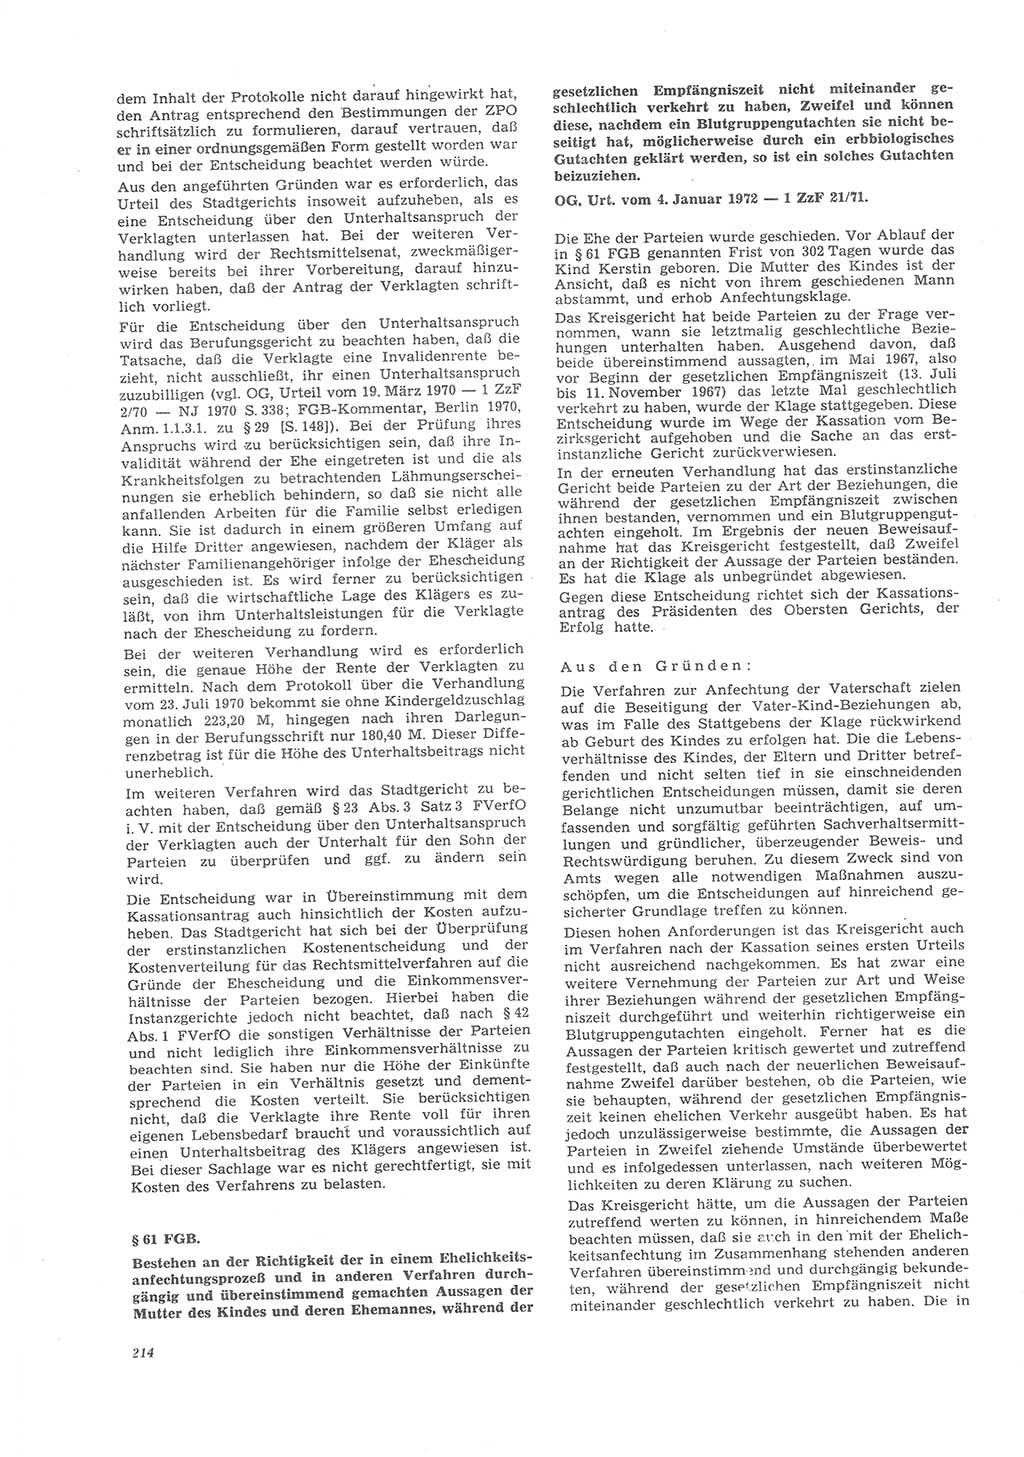 Neue Justiz (NJ), Zeitschrift für Recht und Rechtswissenschaft [Deutsche Demokratische Republik (DDR)], 26. Jahrgang 1972, Seite 214 (NJ DDR 1972, S. 214)